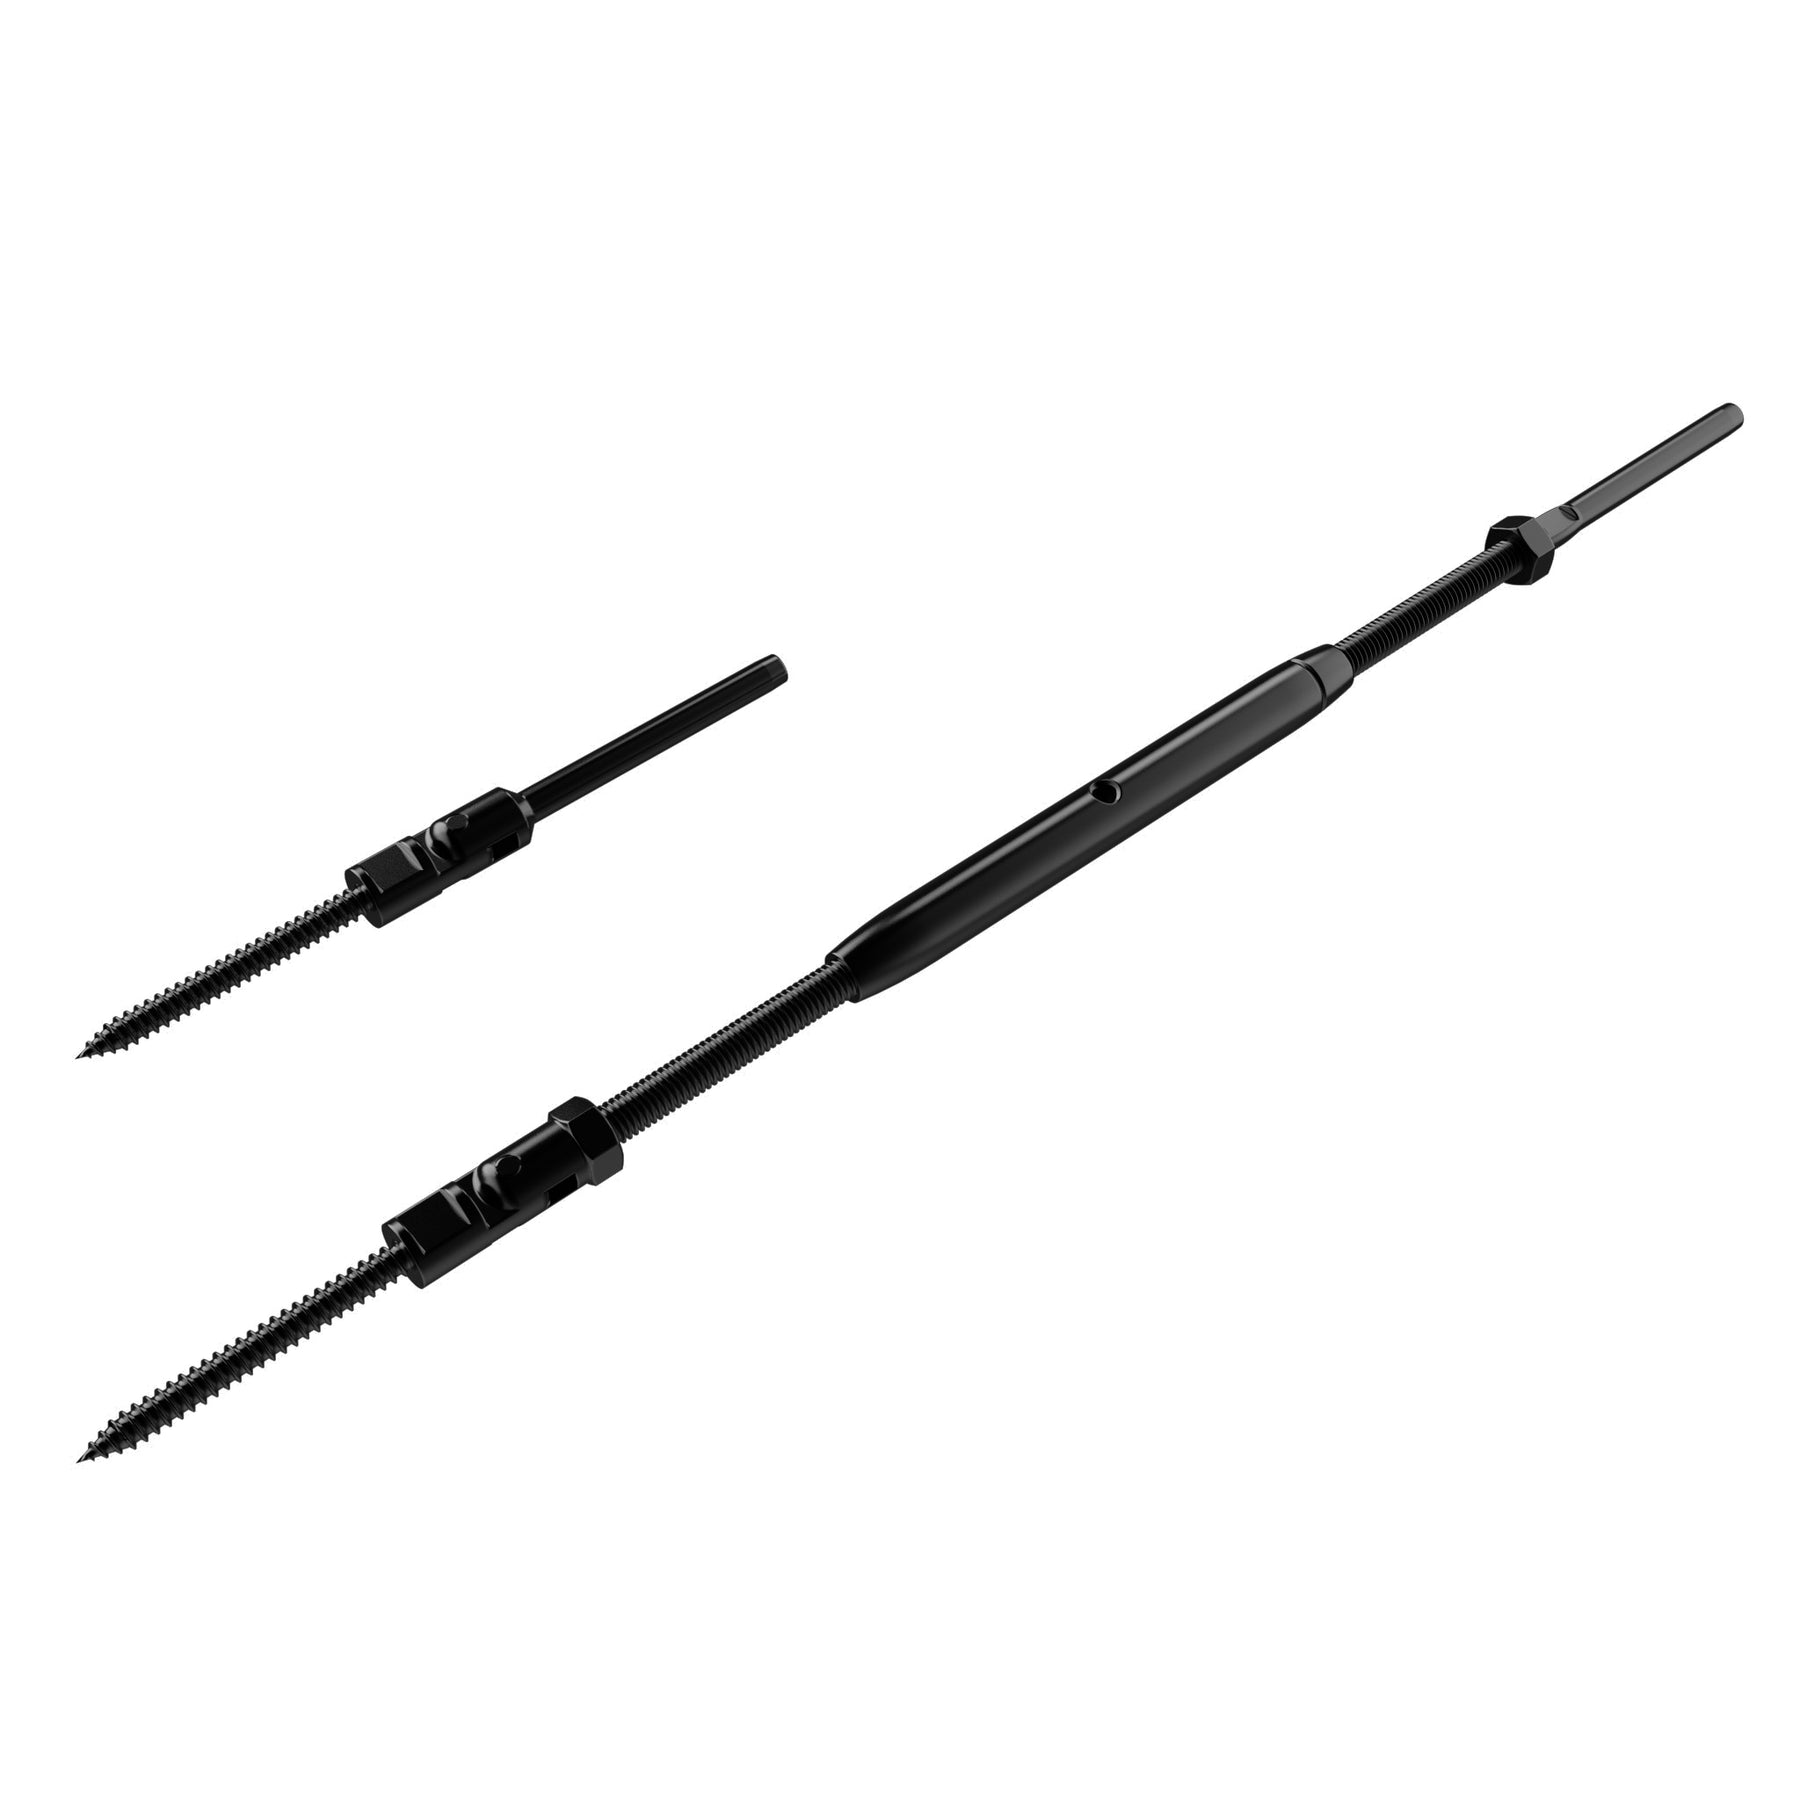 STLX-CC009 1/8" Cable Hardware Kit - Adjustable Angle Lag Screws Turnbuckle Kit